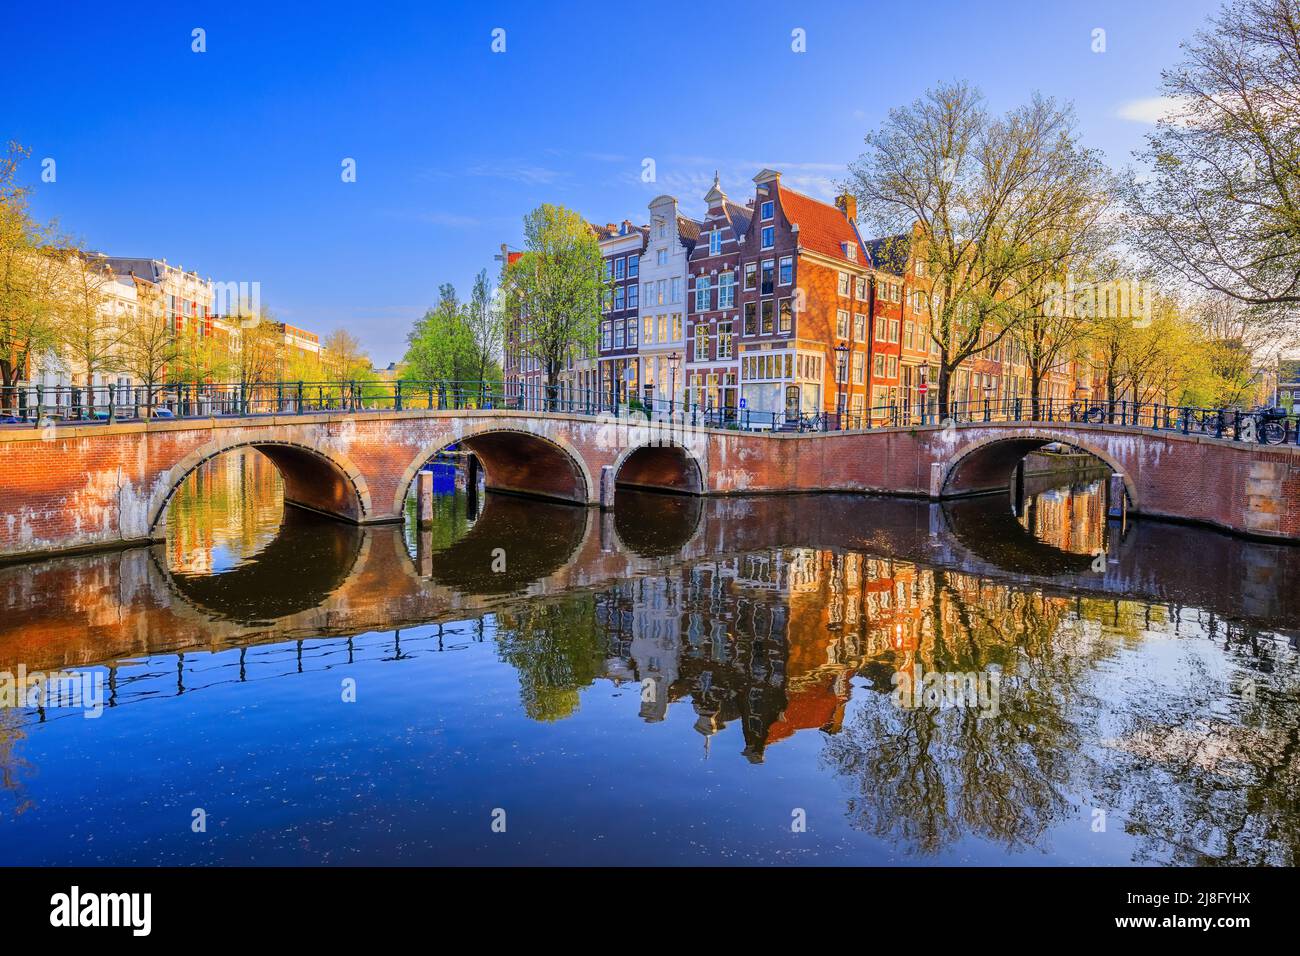 Ámsterdam, Países Bajos. El canal Keizersgracht (Emperador) y puentes por la mañana. Foto de stock